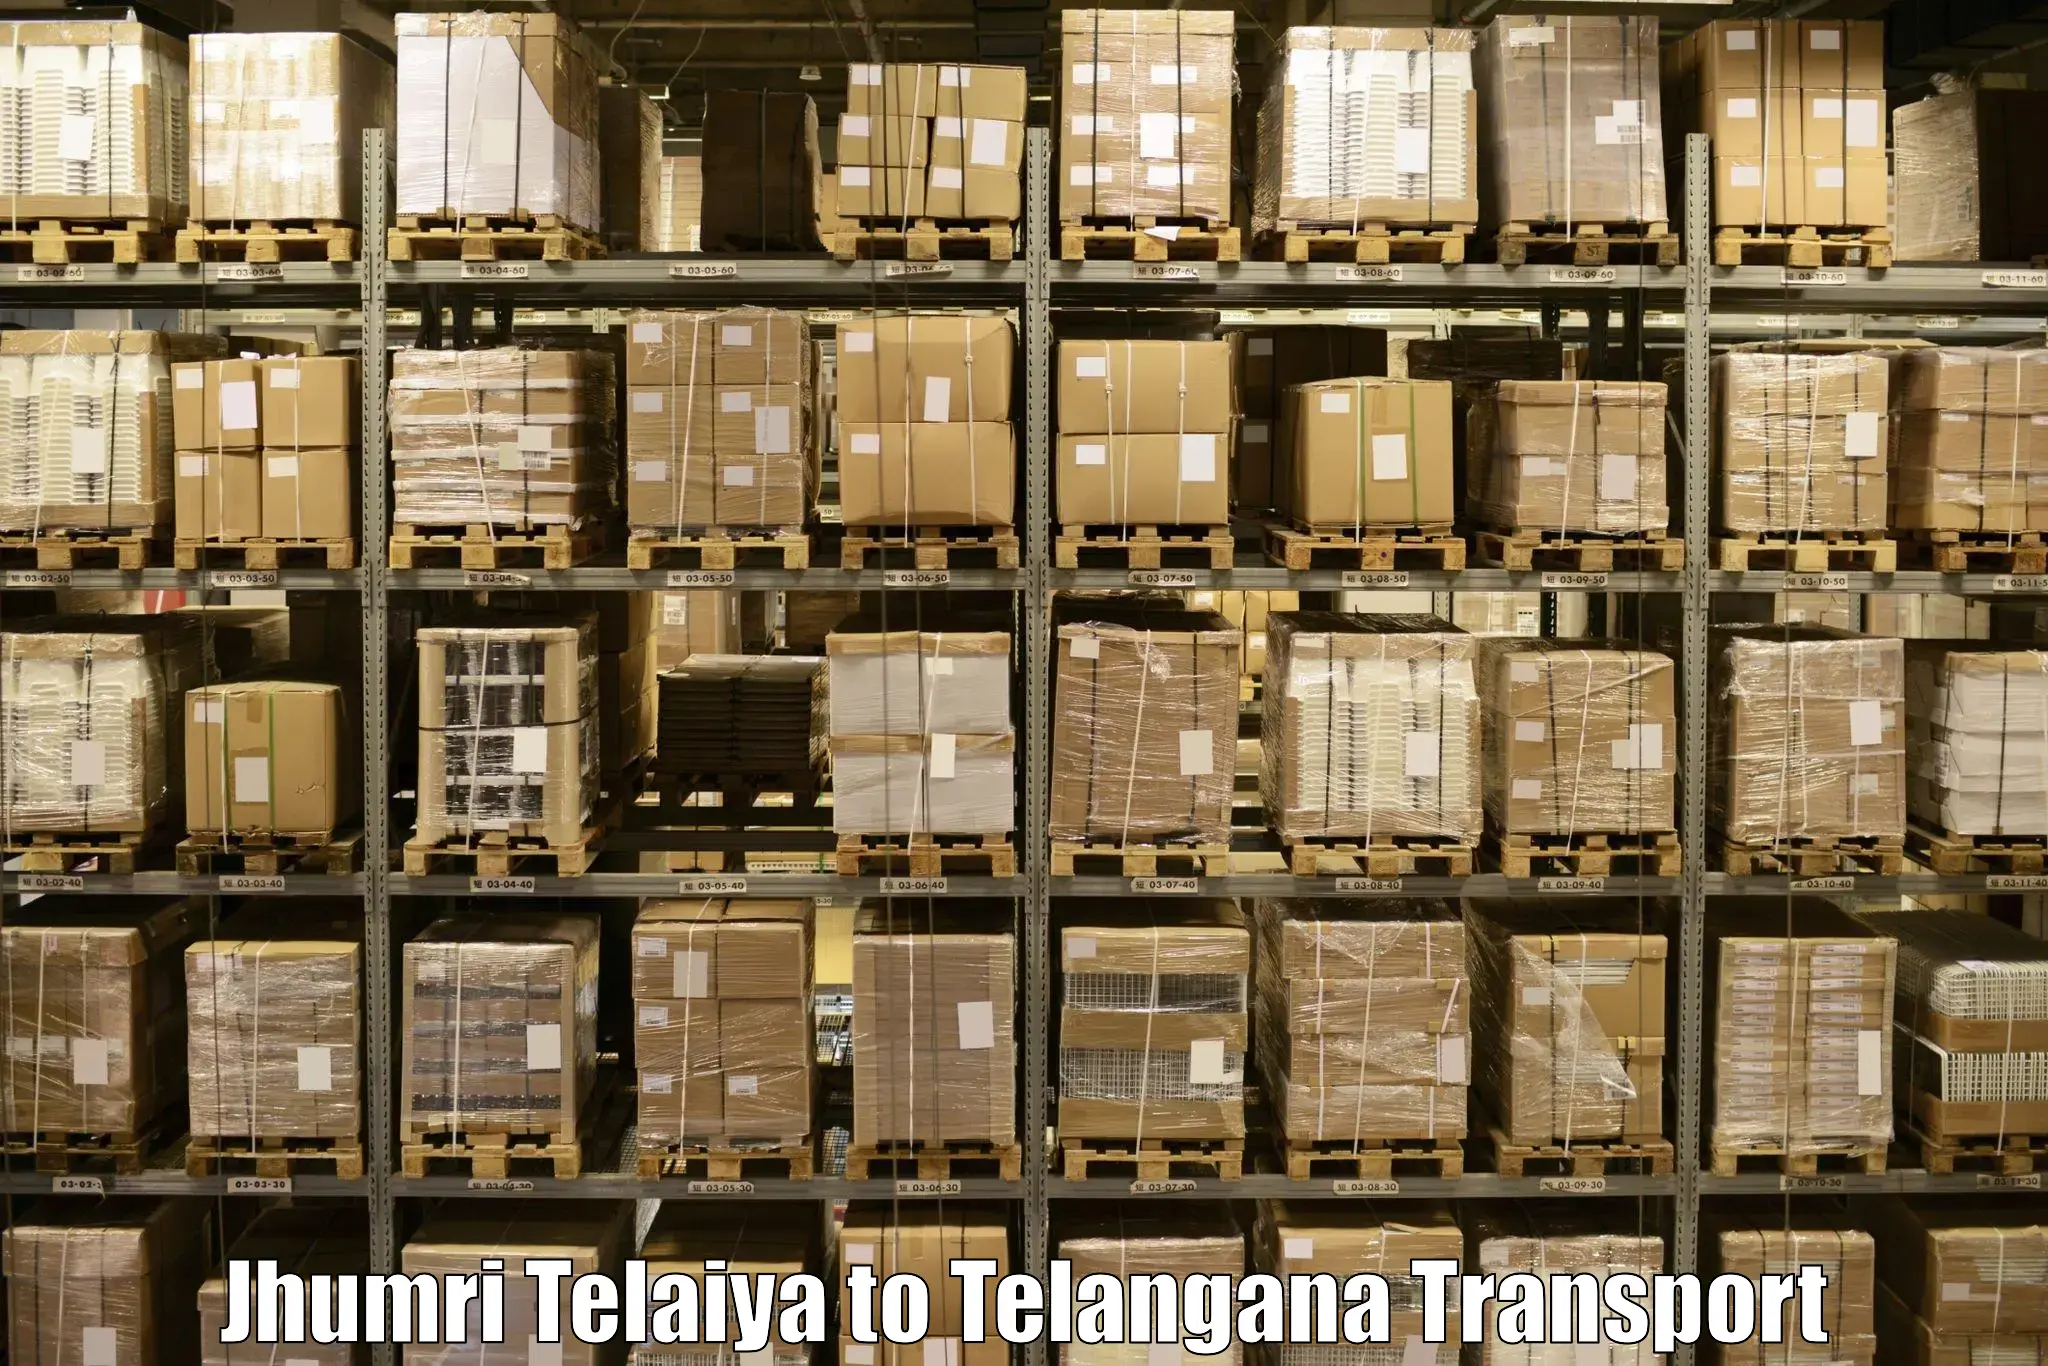 Parcel transport services Jhumri Telaiya to Bodhan